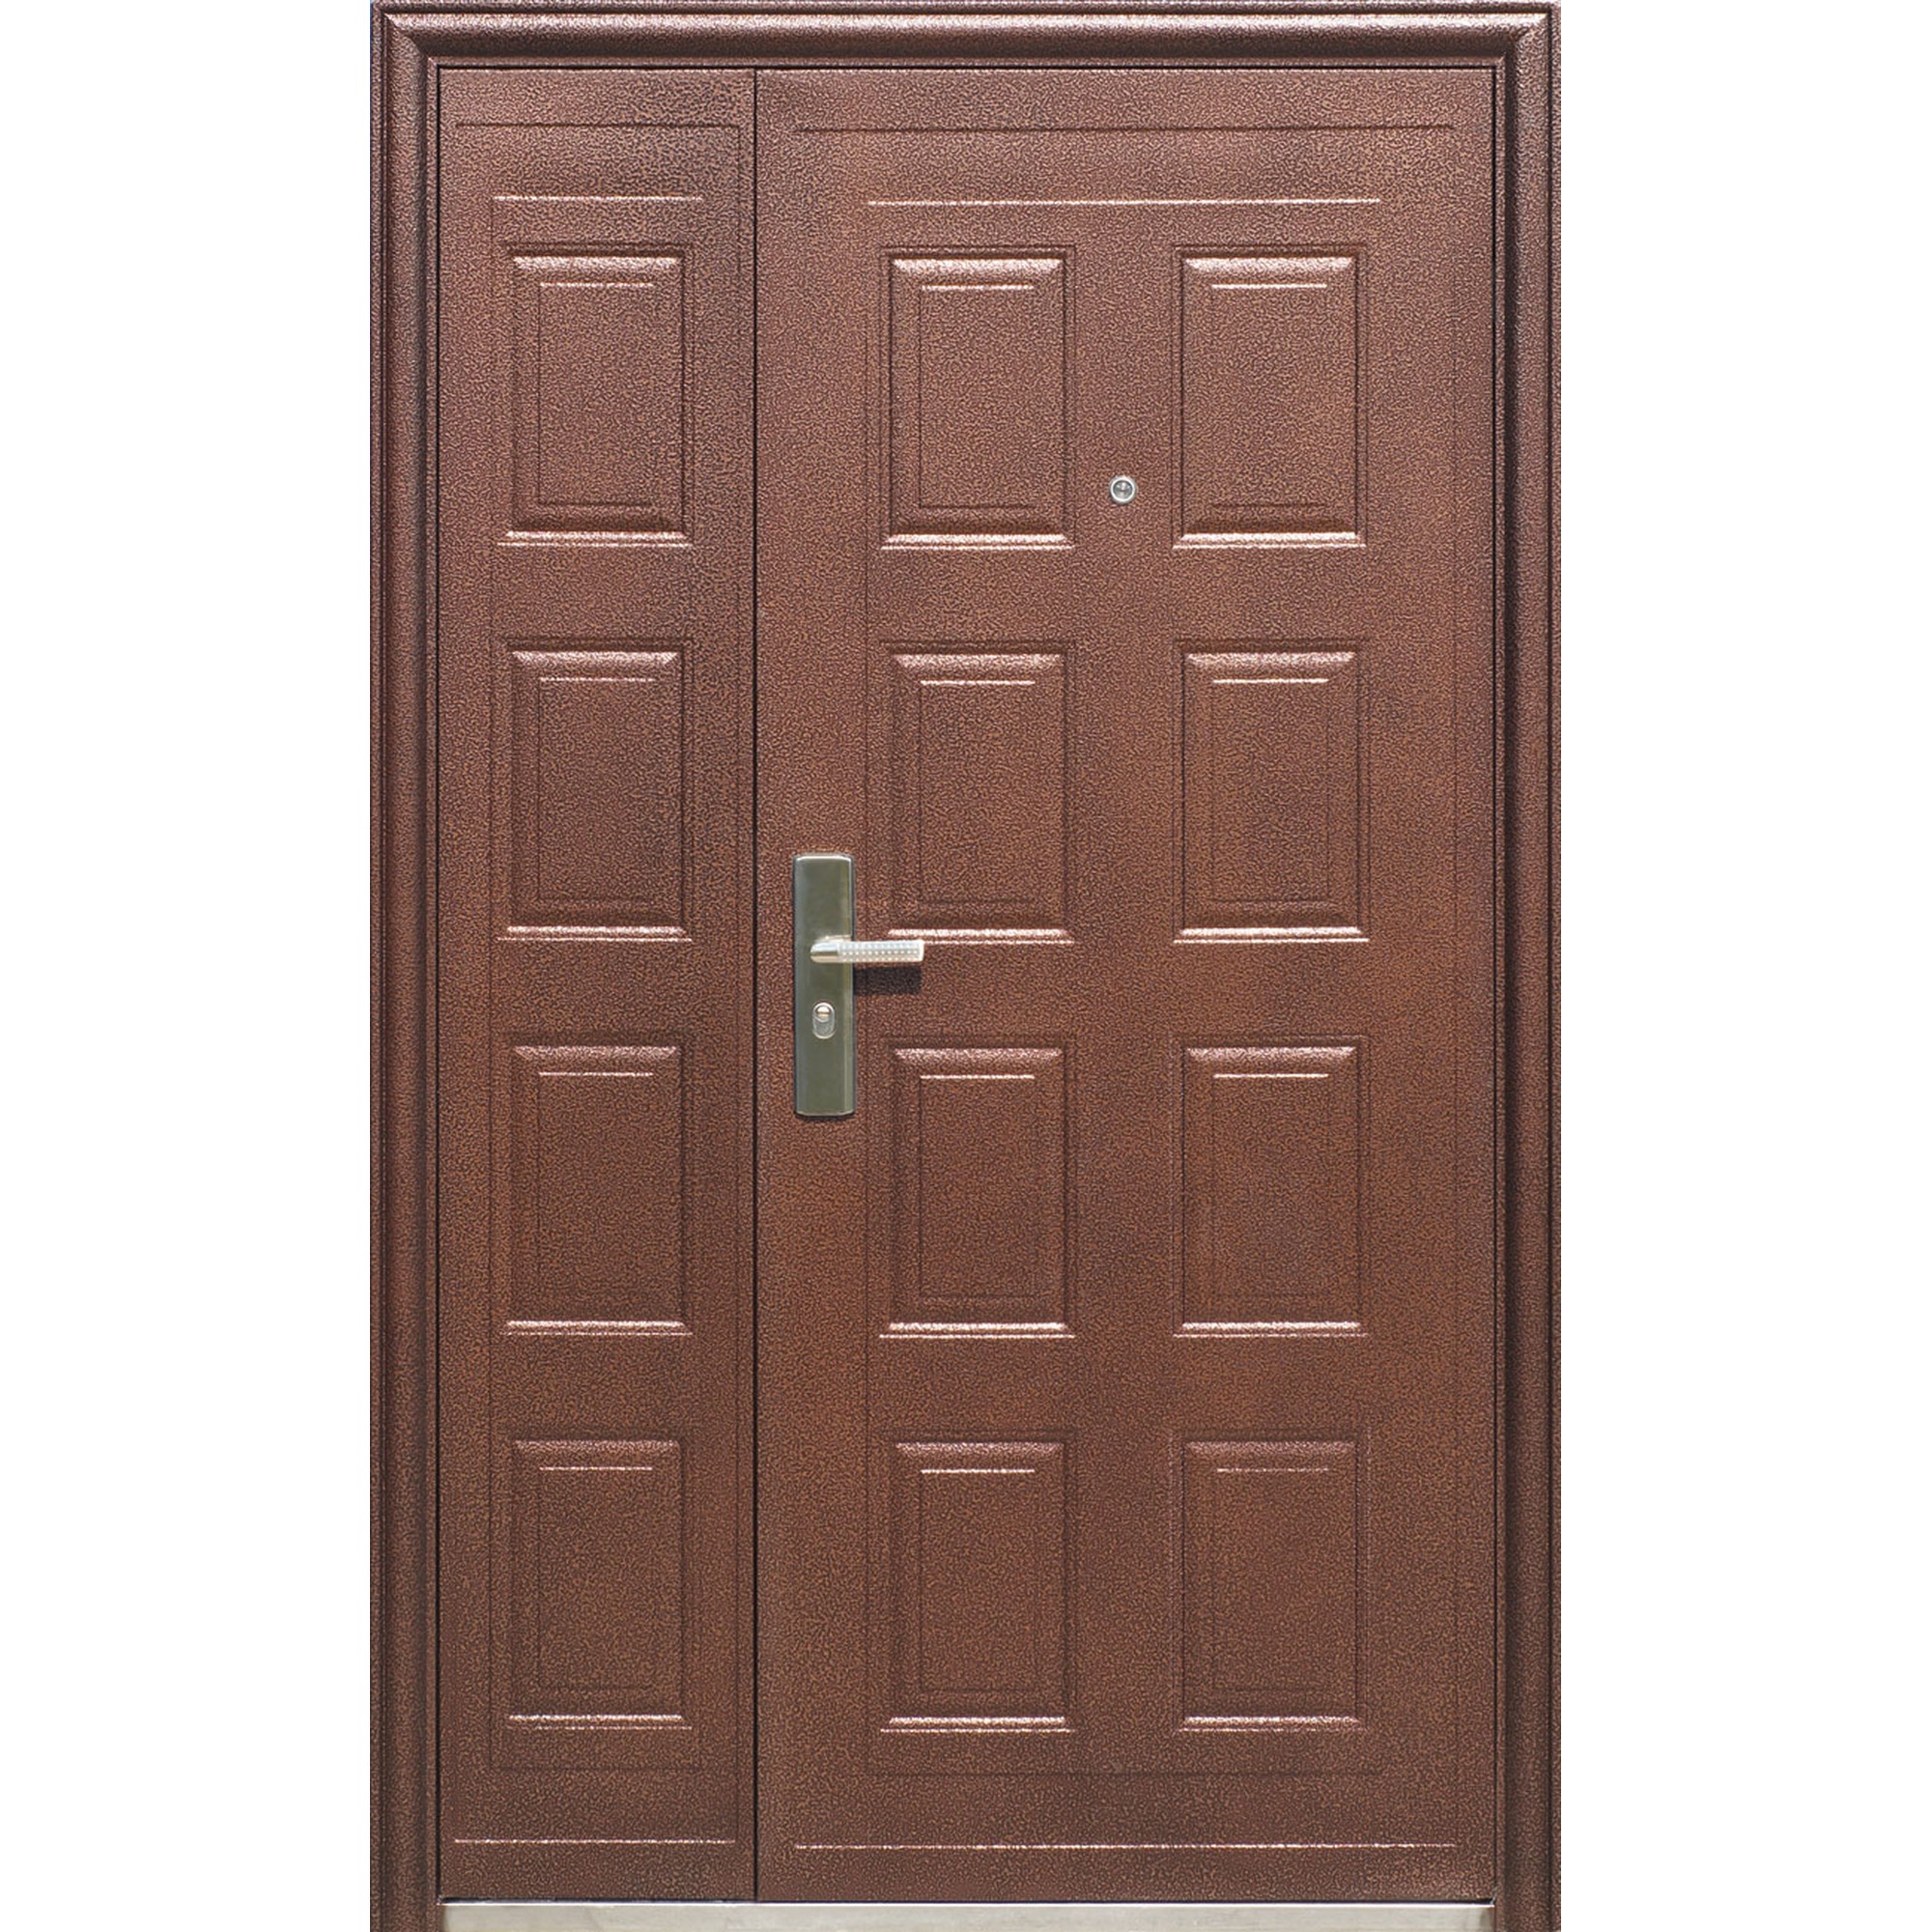 Дверь входная левая купить. Дверь входная металлическая Toodoors 801. Kaiser k700 дверь входная. Дверь входная 1200х2200. Дверь входная металлическая 2200х1200.